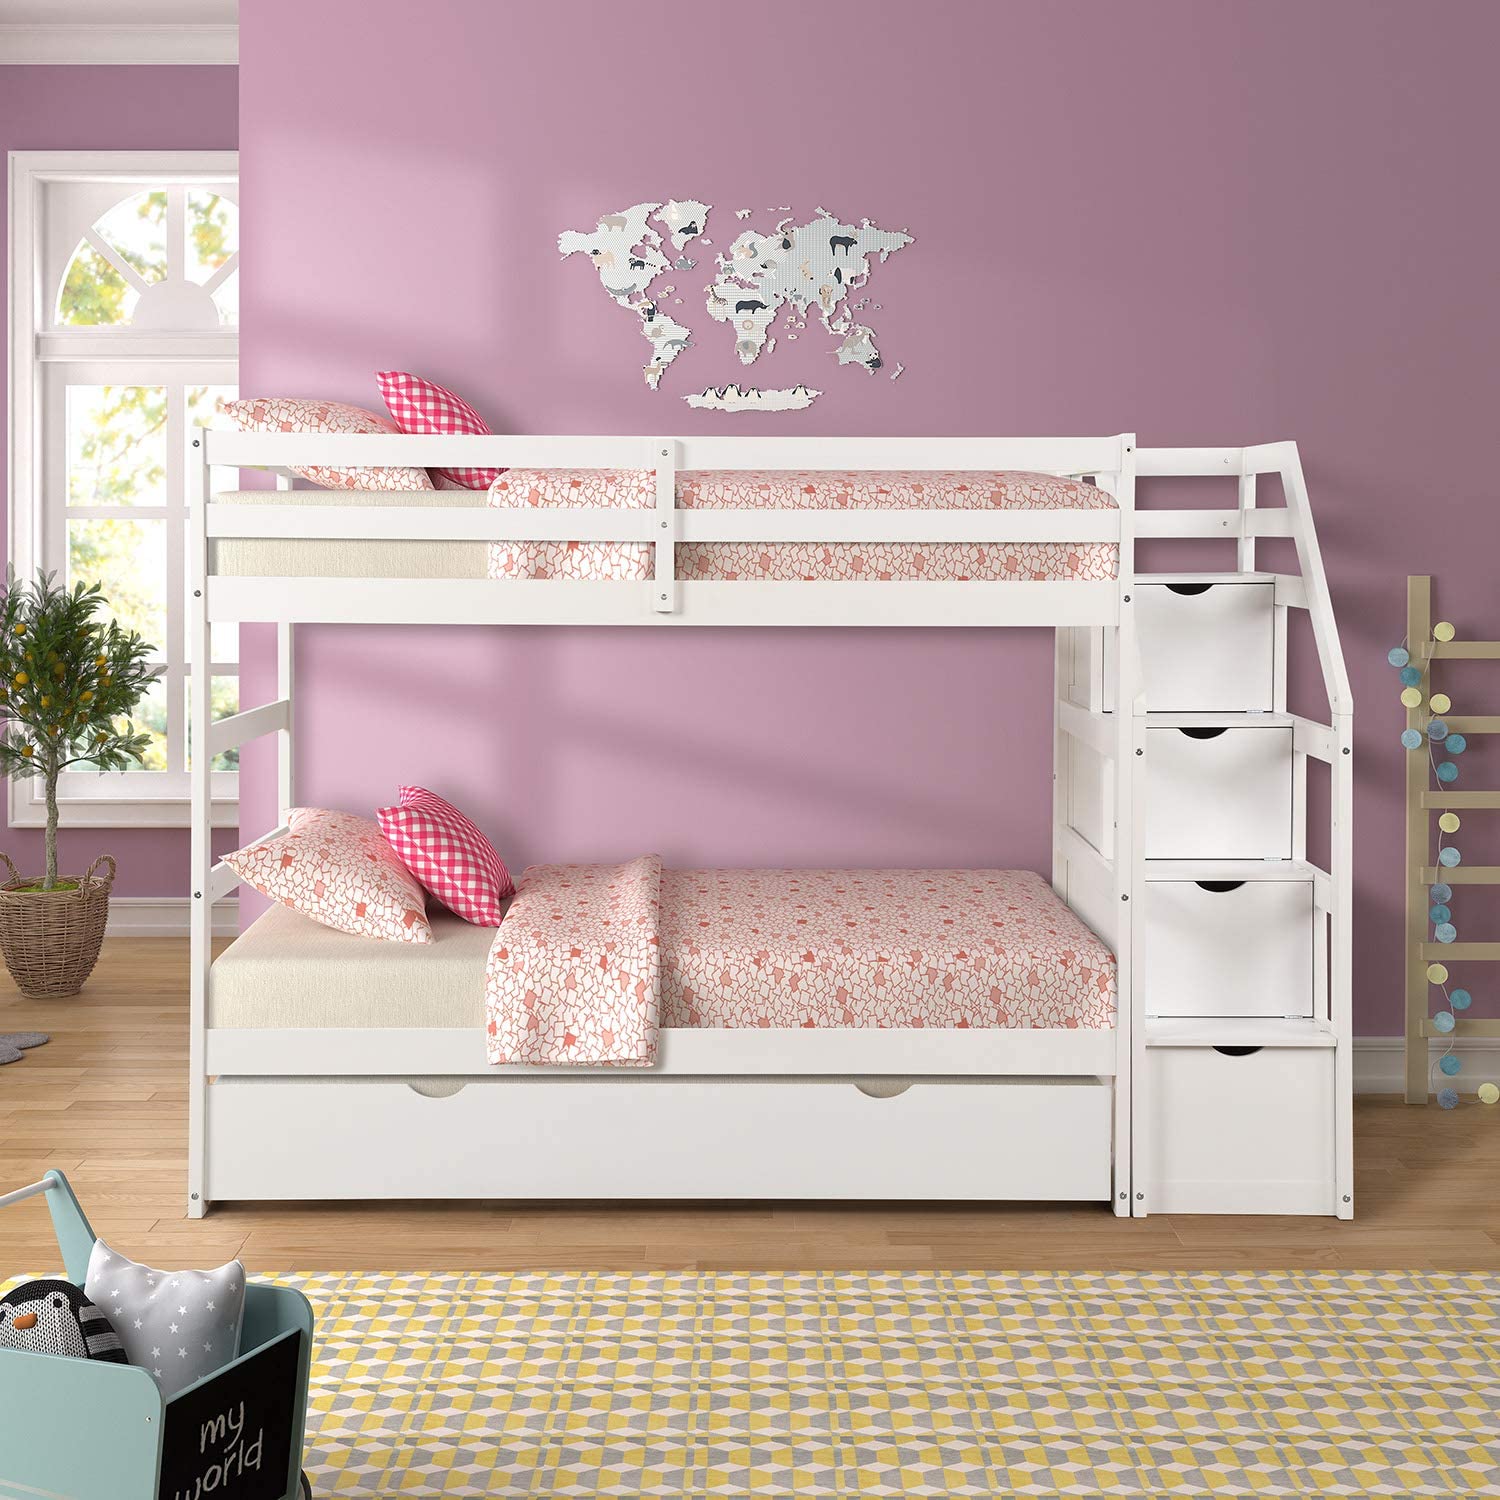 Mua giường tầng tại Chương Mỹ với mẫu giường tầng GT 165 – sản phẩm thông minh 3 tầng kèm ngăn kéo tiện ích